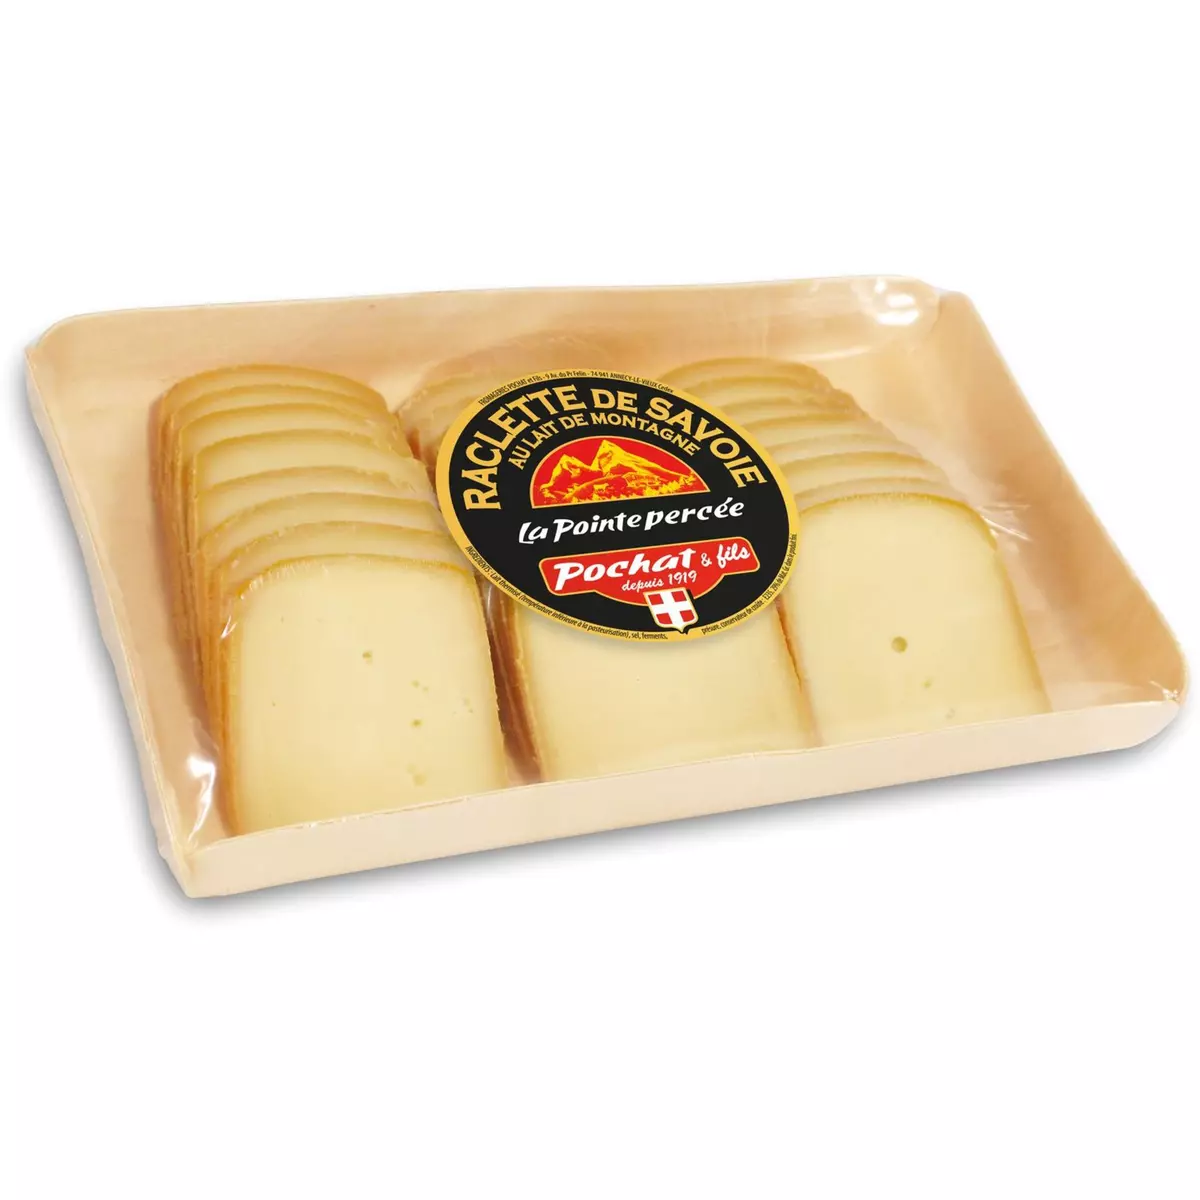 POCHAT & FILS Plateau de fromage de Savoie à raclette 550g